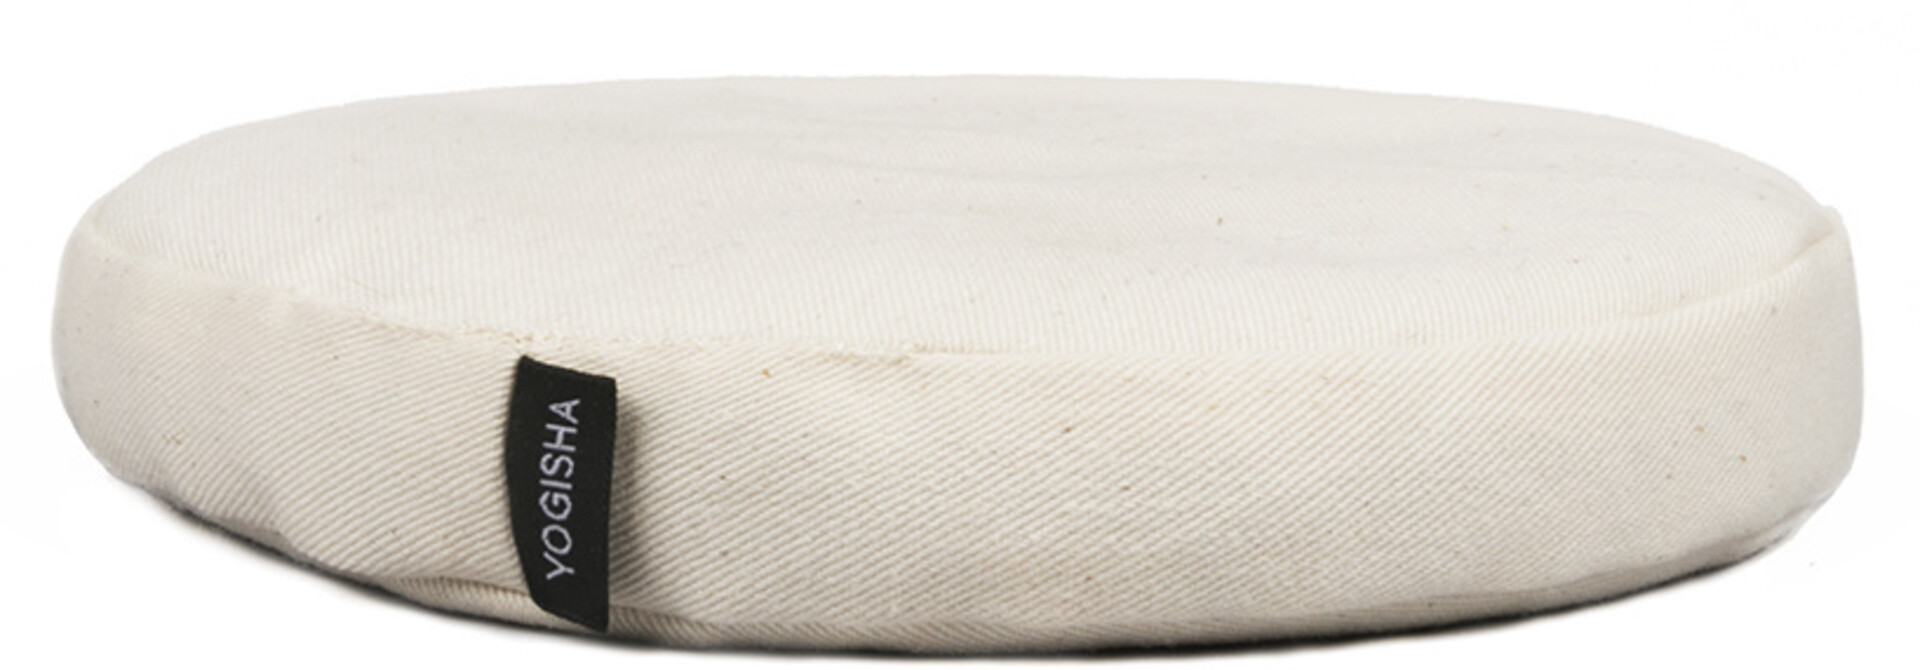 Yogisha Singing Bowl Cushion Deluxe